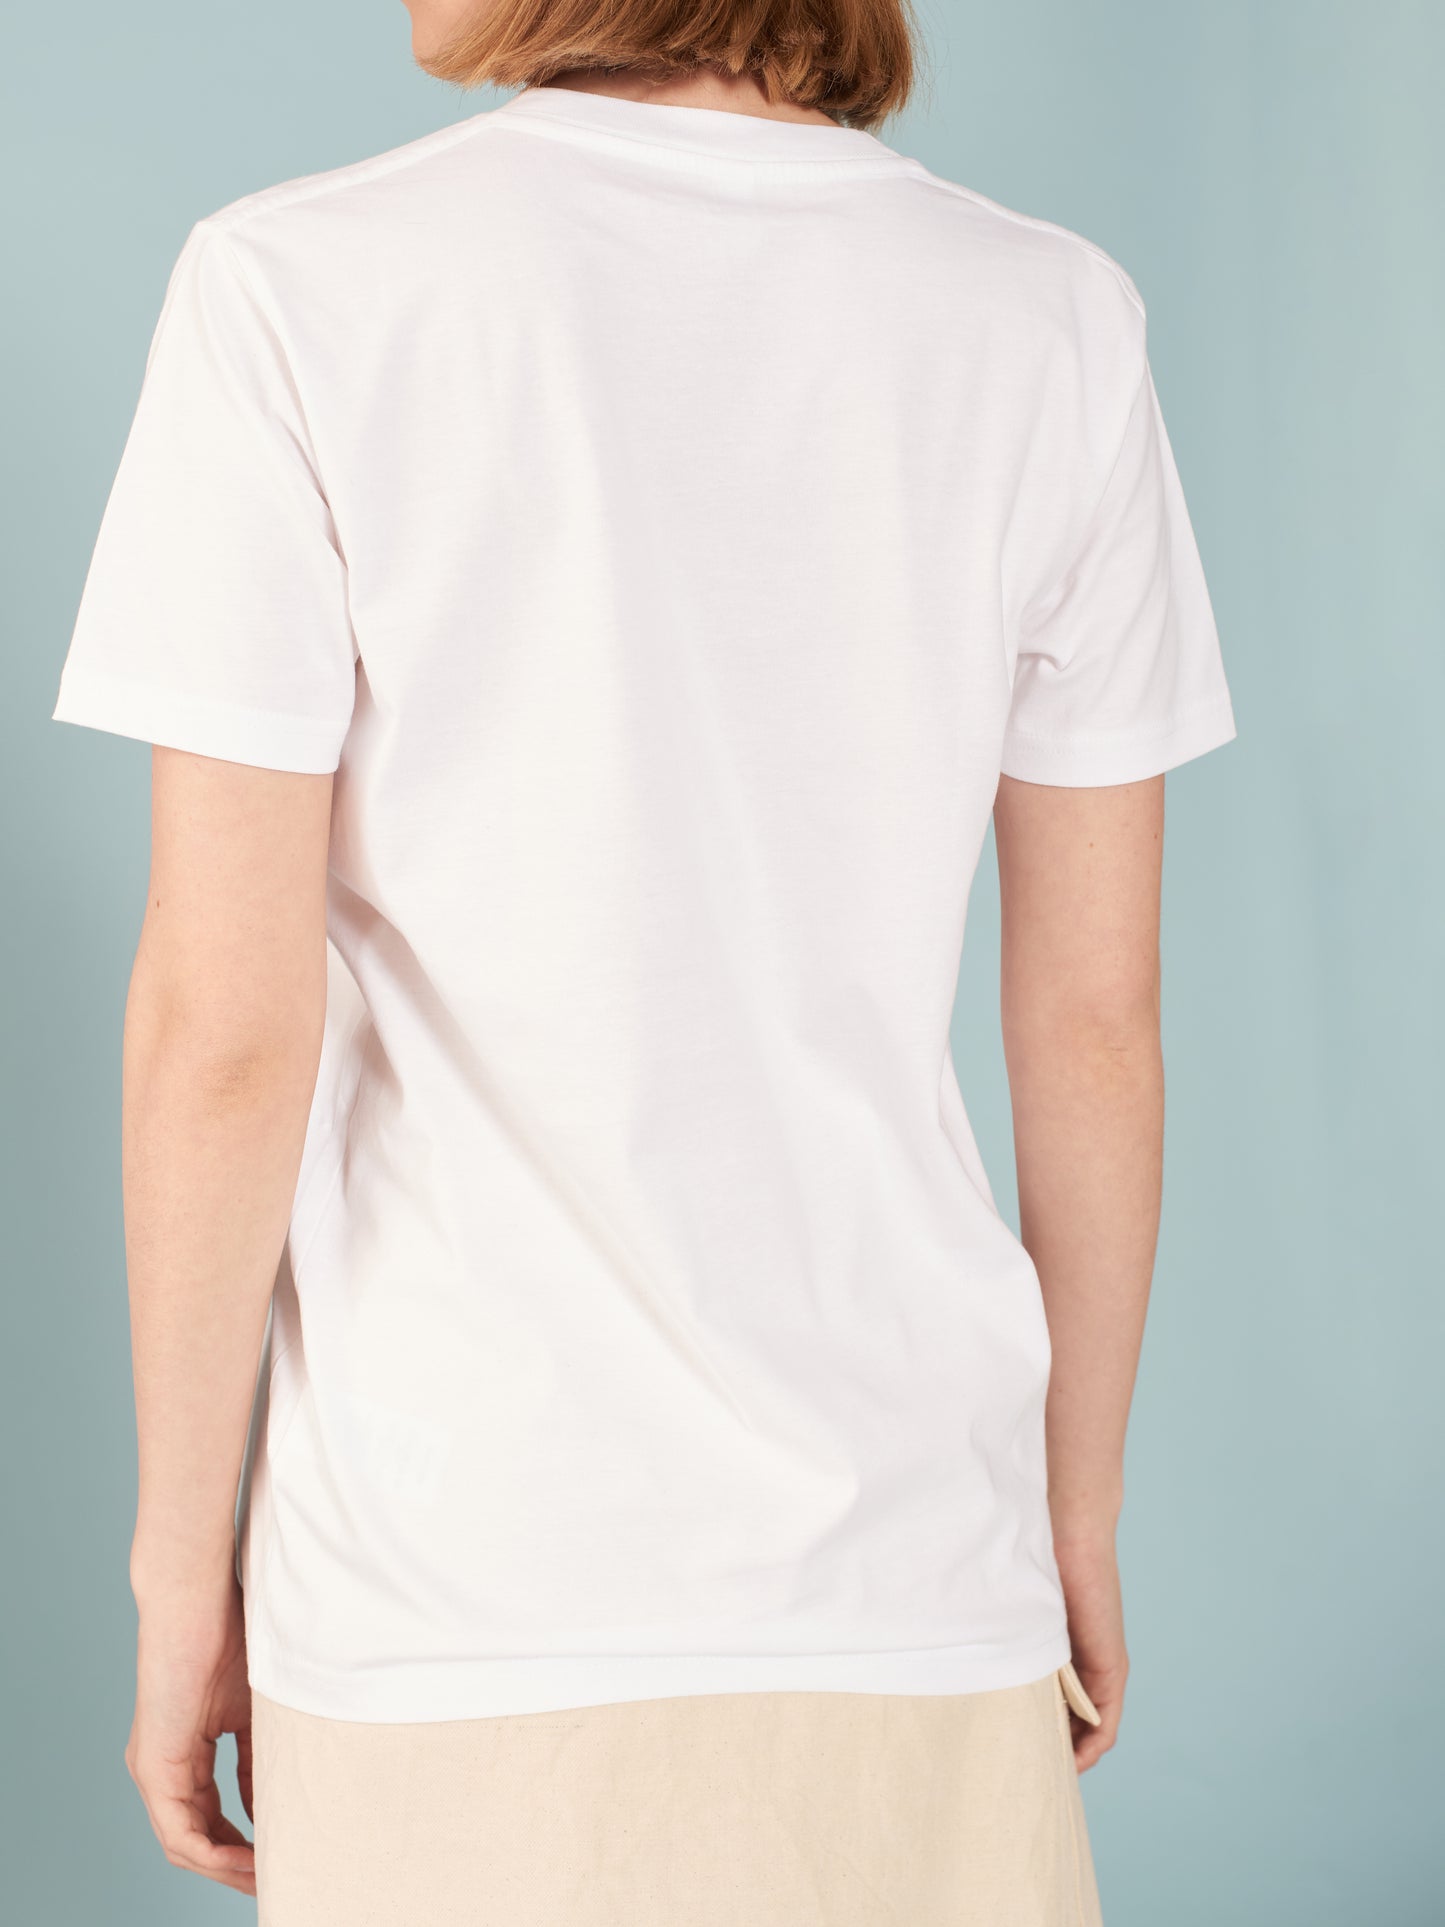 Herbs white short sleeve unisex t-shirt